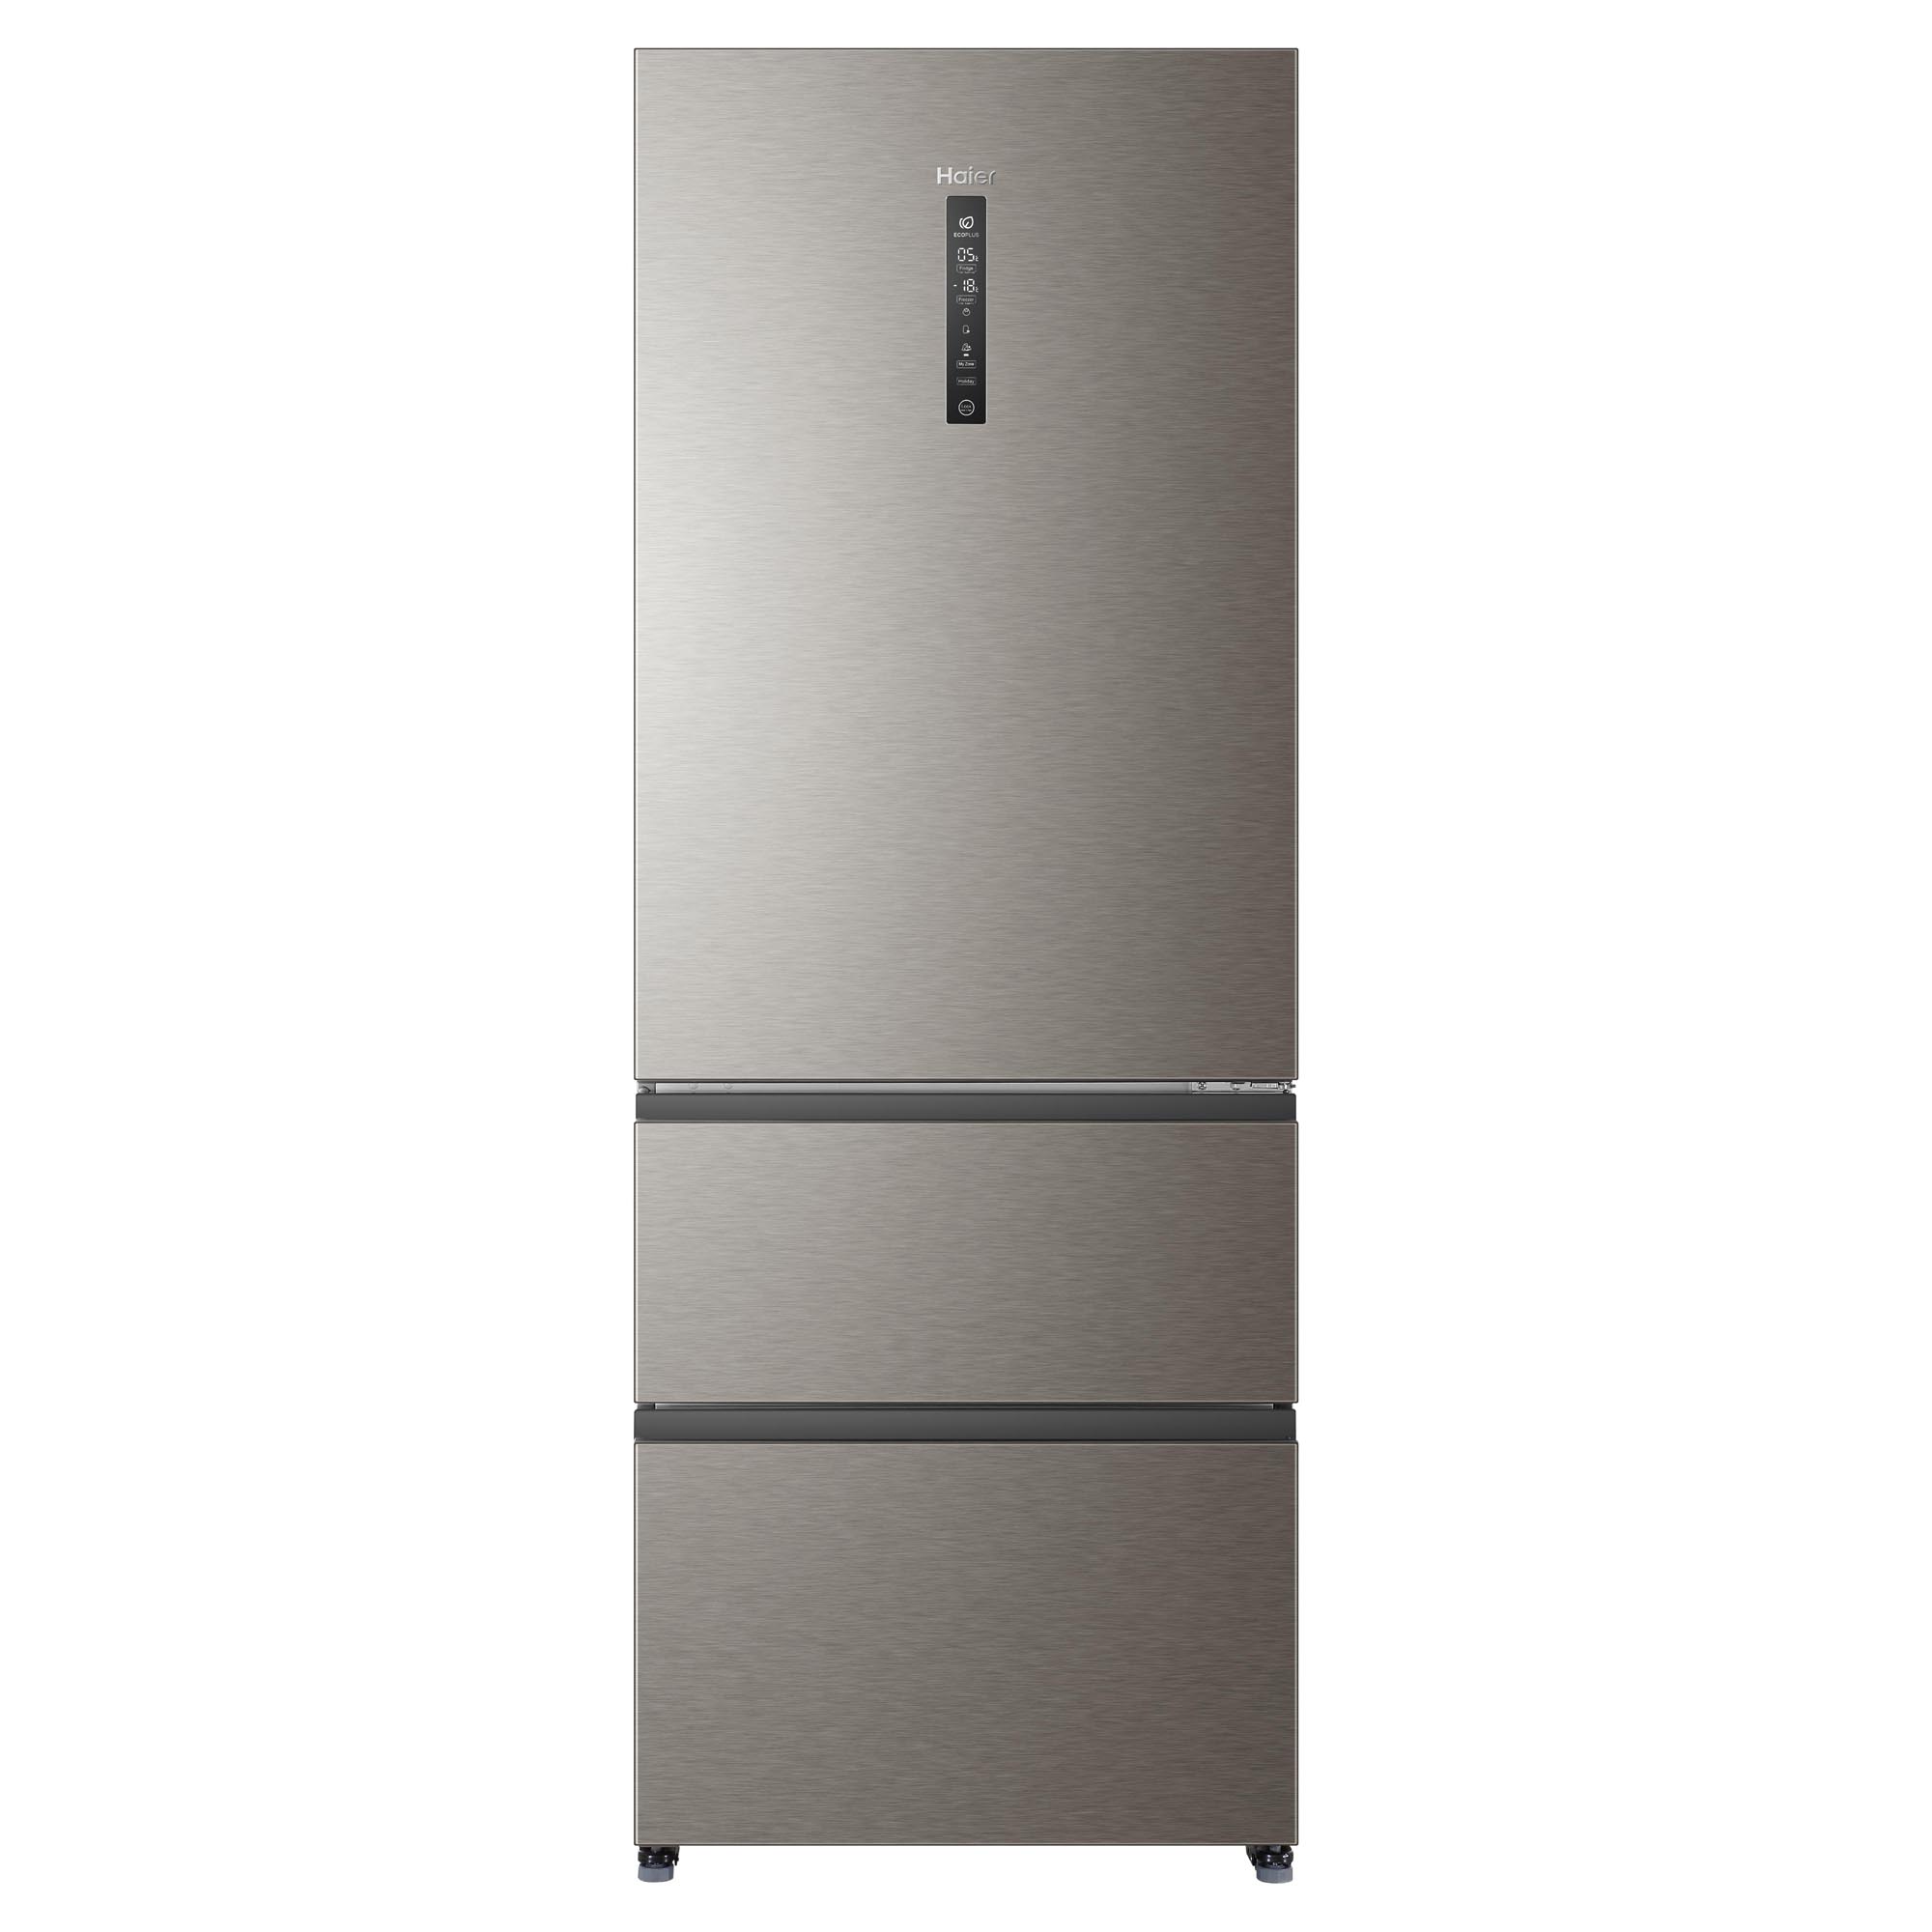 Отзывы о холодильниках haier. Холодильник Haier a4f742cmg. Холодильник Haier a4f742cmg, серебристый. Холодильник Хайер 742. Холодильник многодверный Haier a4f742cmg.